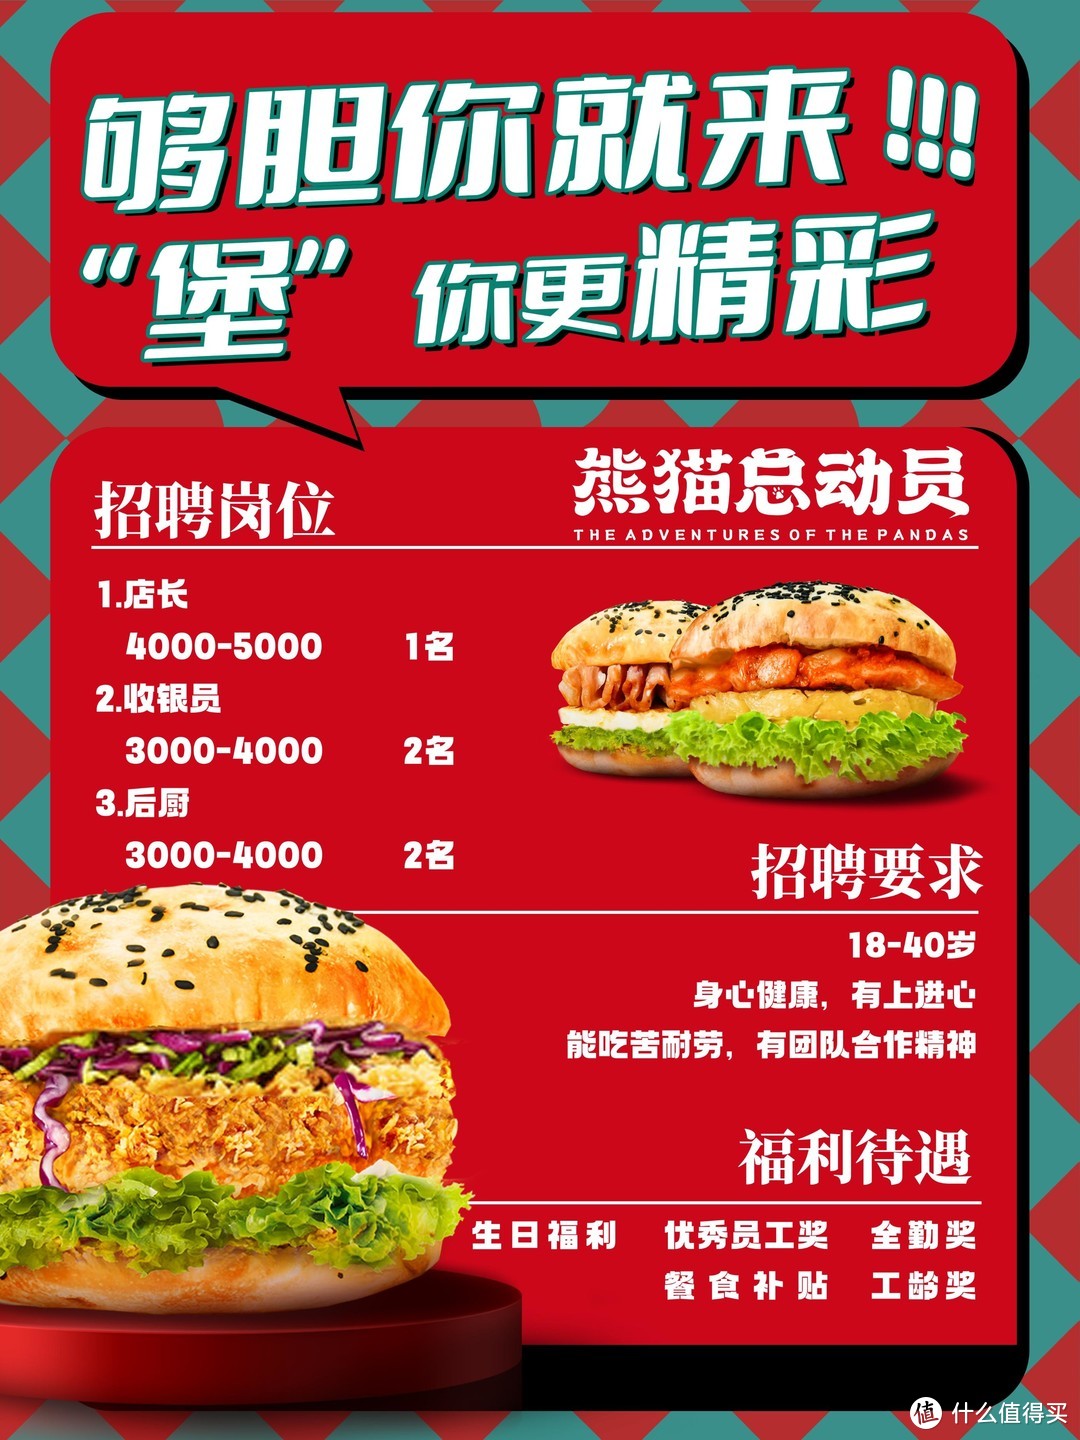 雲景集团香港有限公司：《熊猫总动员》推出中国文化汉堡品牌